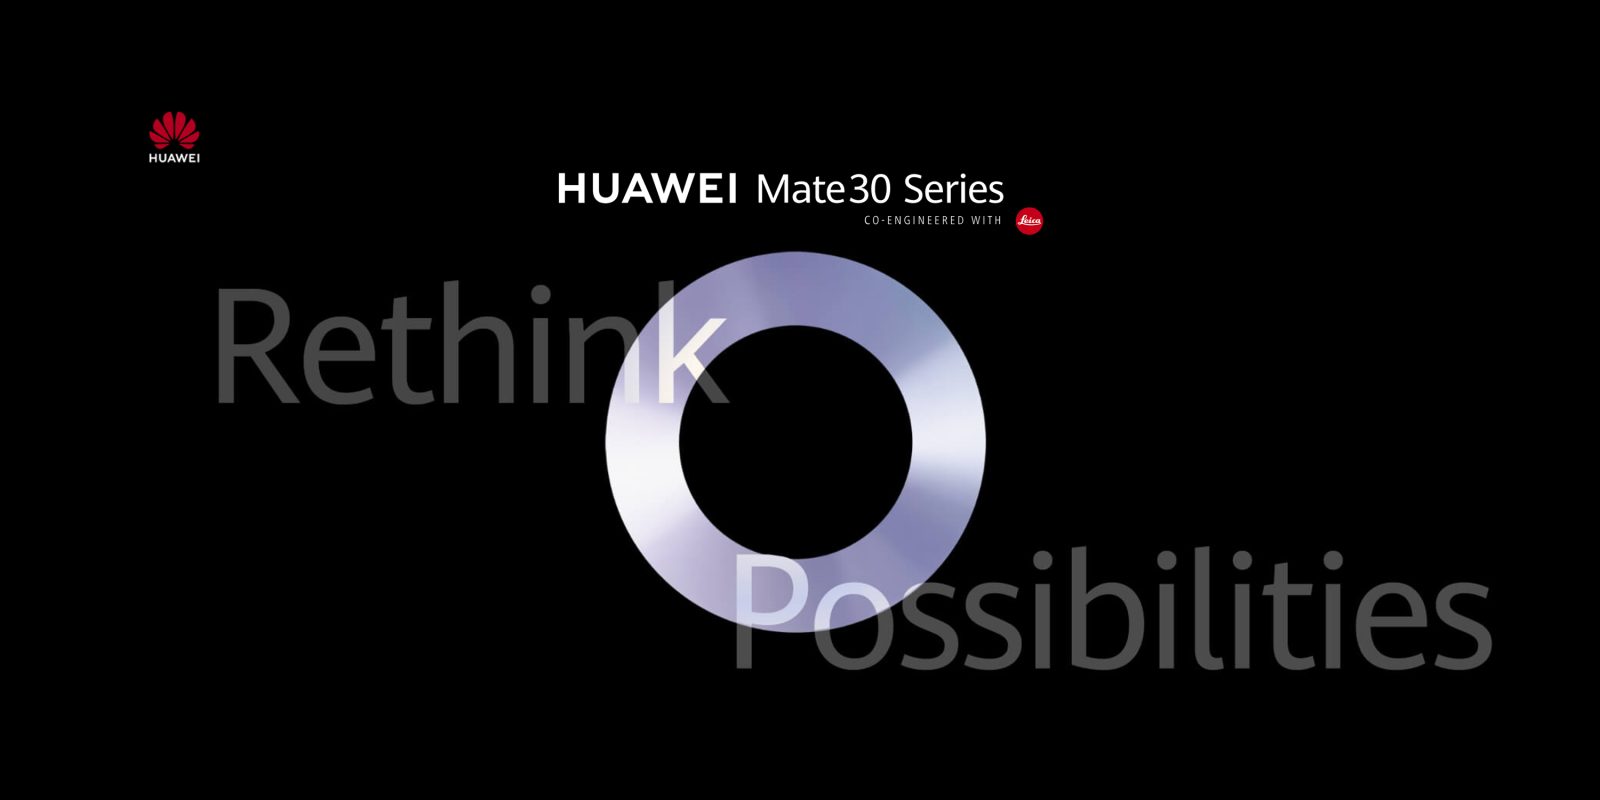 Spotykamy się w Monachium w dniu 19 września: Huawei ogłosił datę prezentacji Mate 30